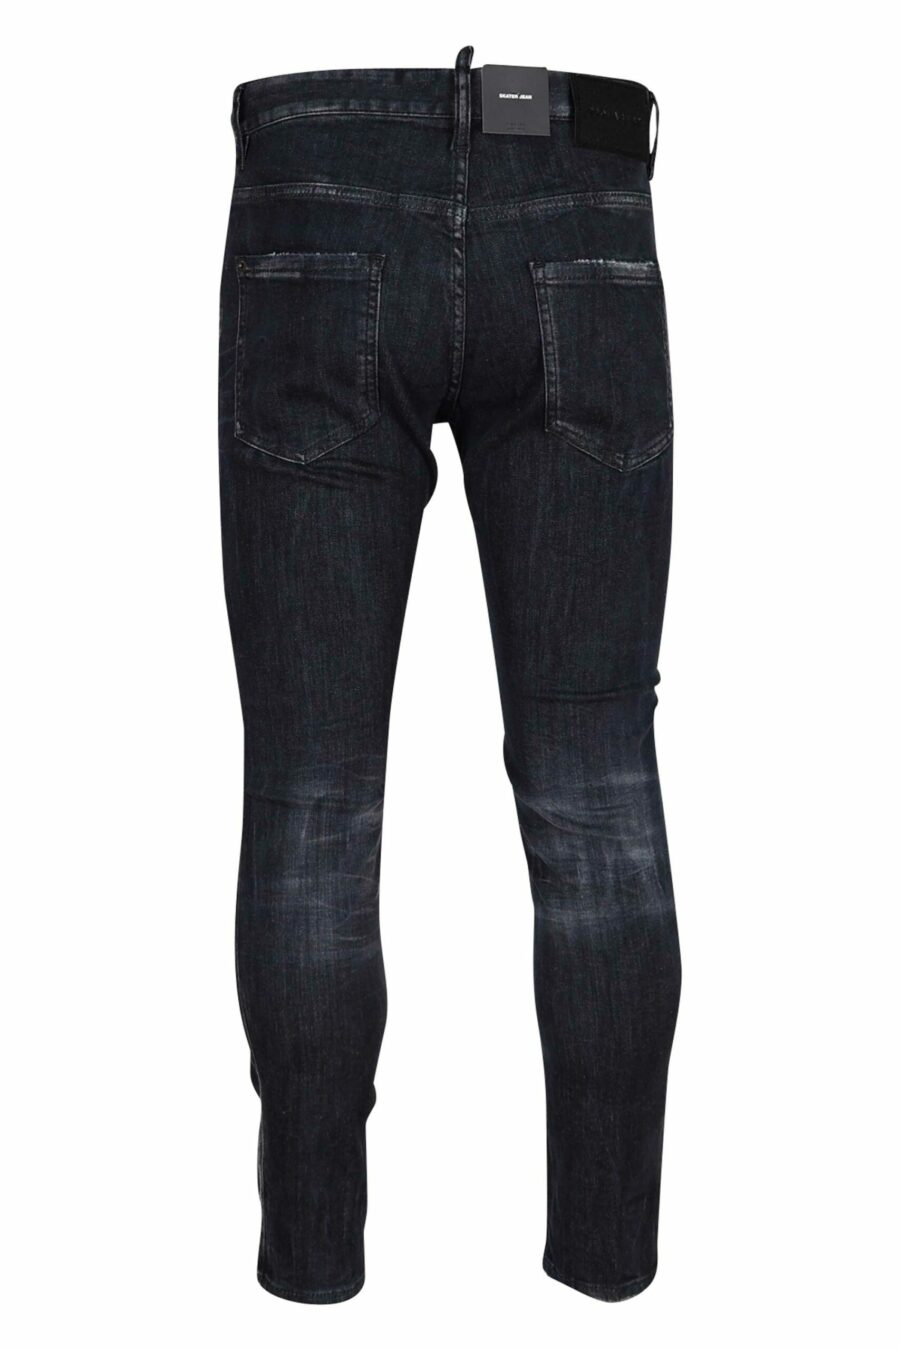 Semi-worn black "skater jean" jeans - 8054148289591 2 scaled